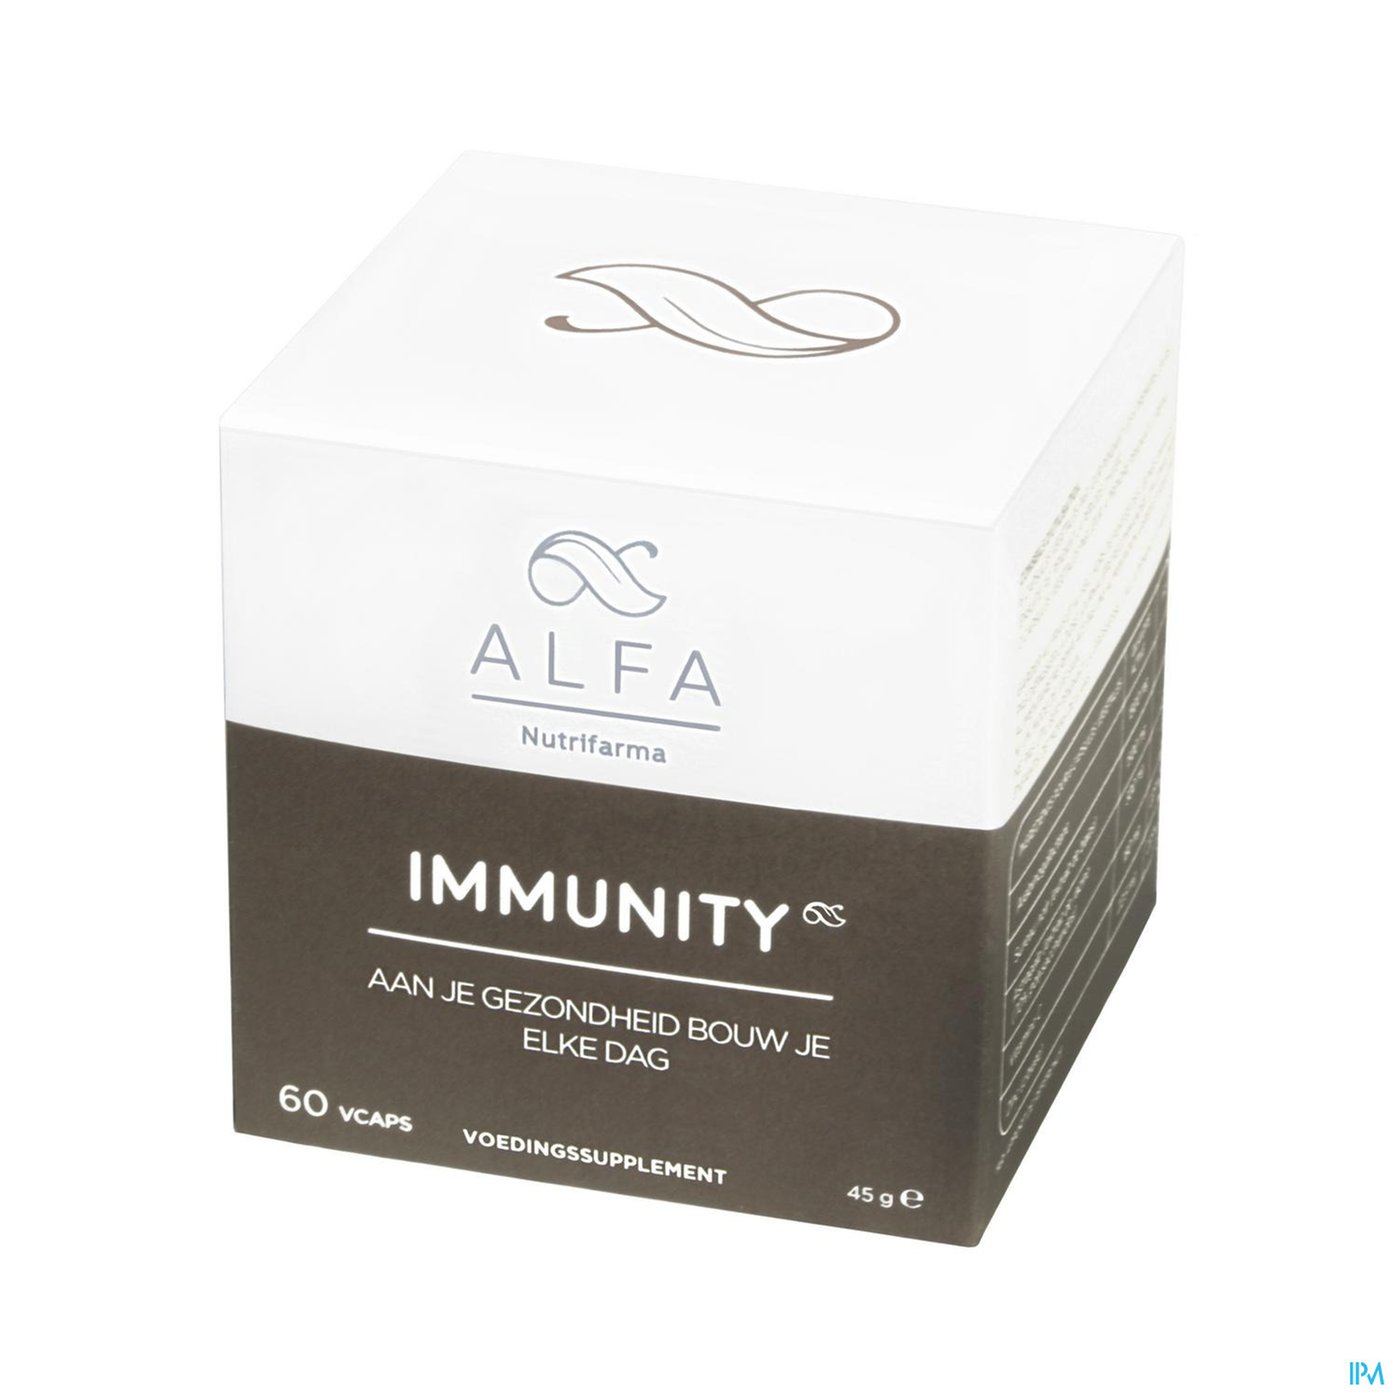 Alfa Immunity V-caps 60